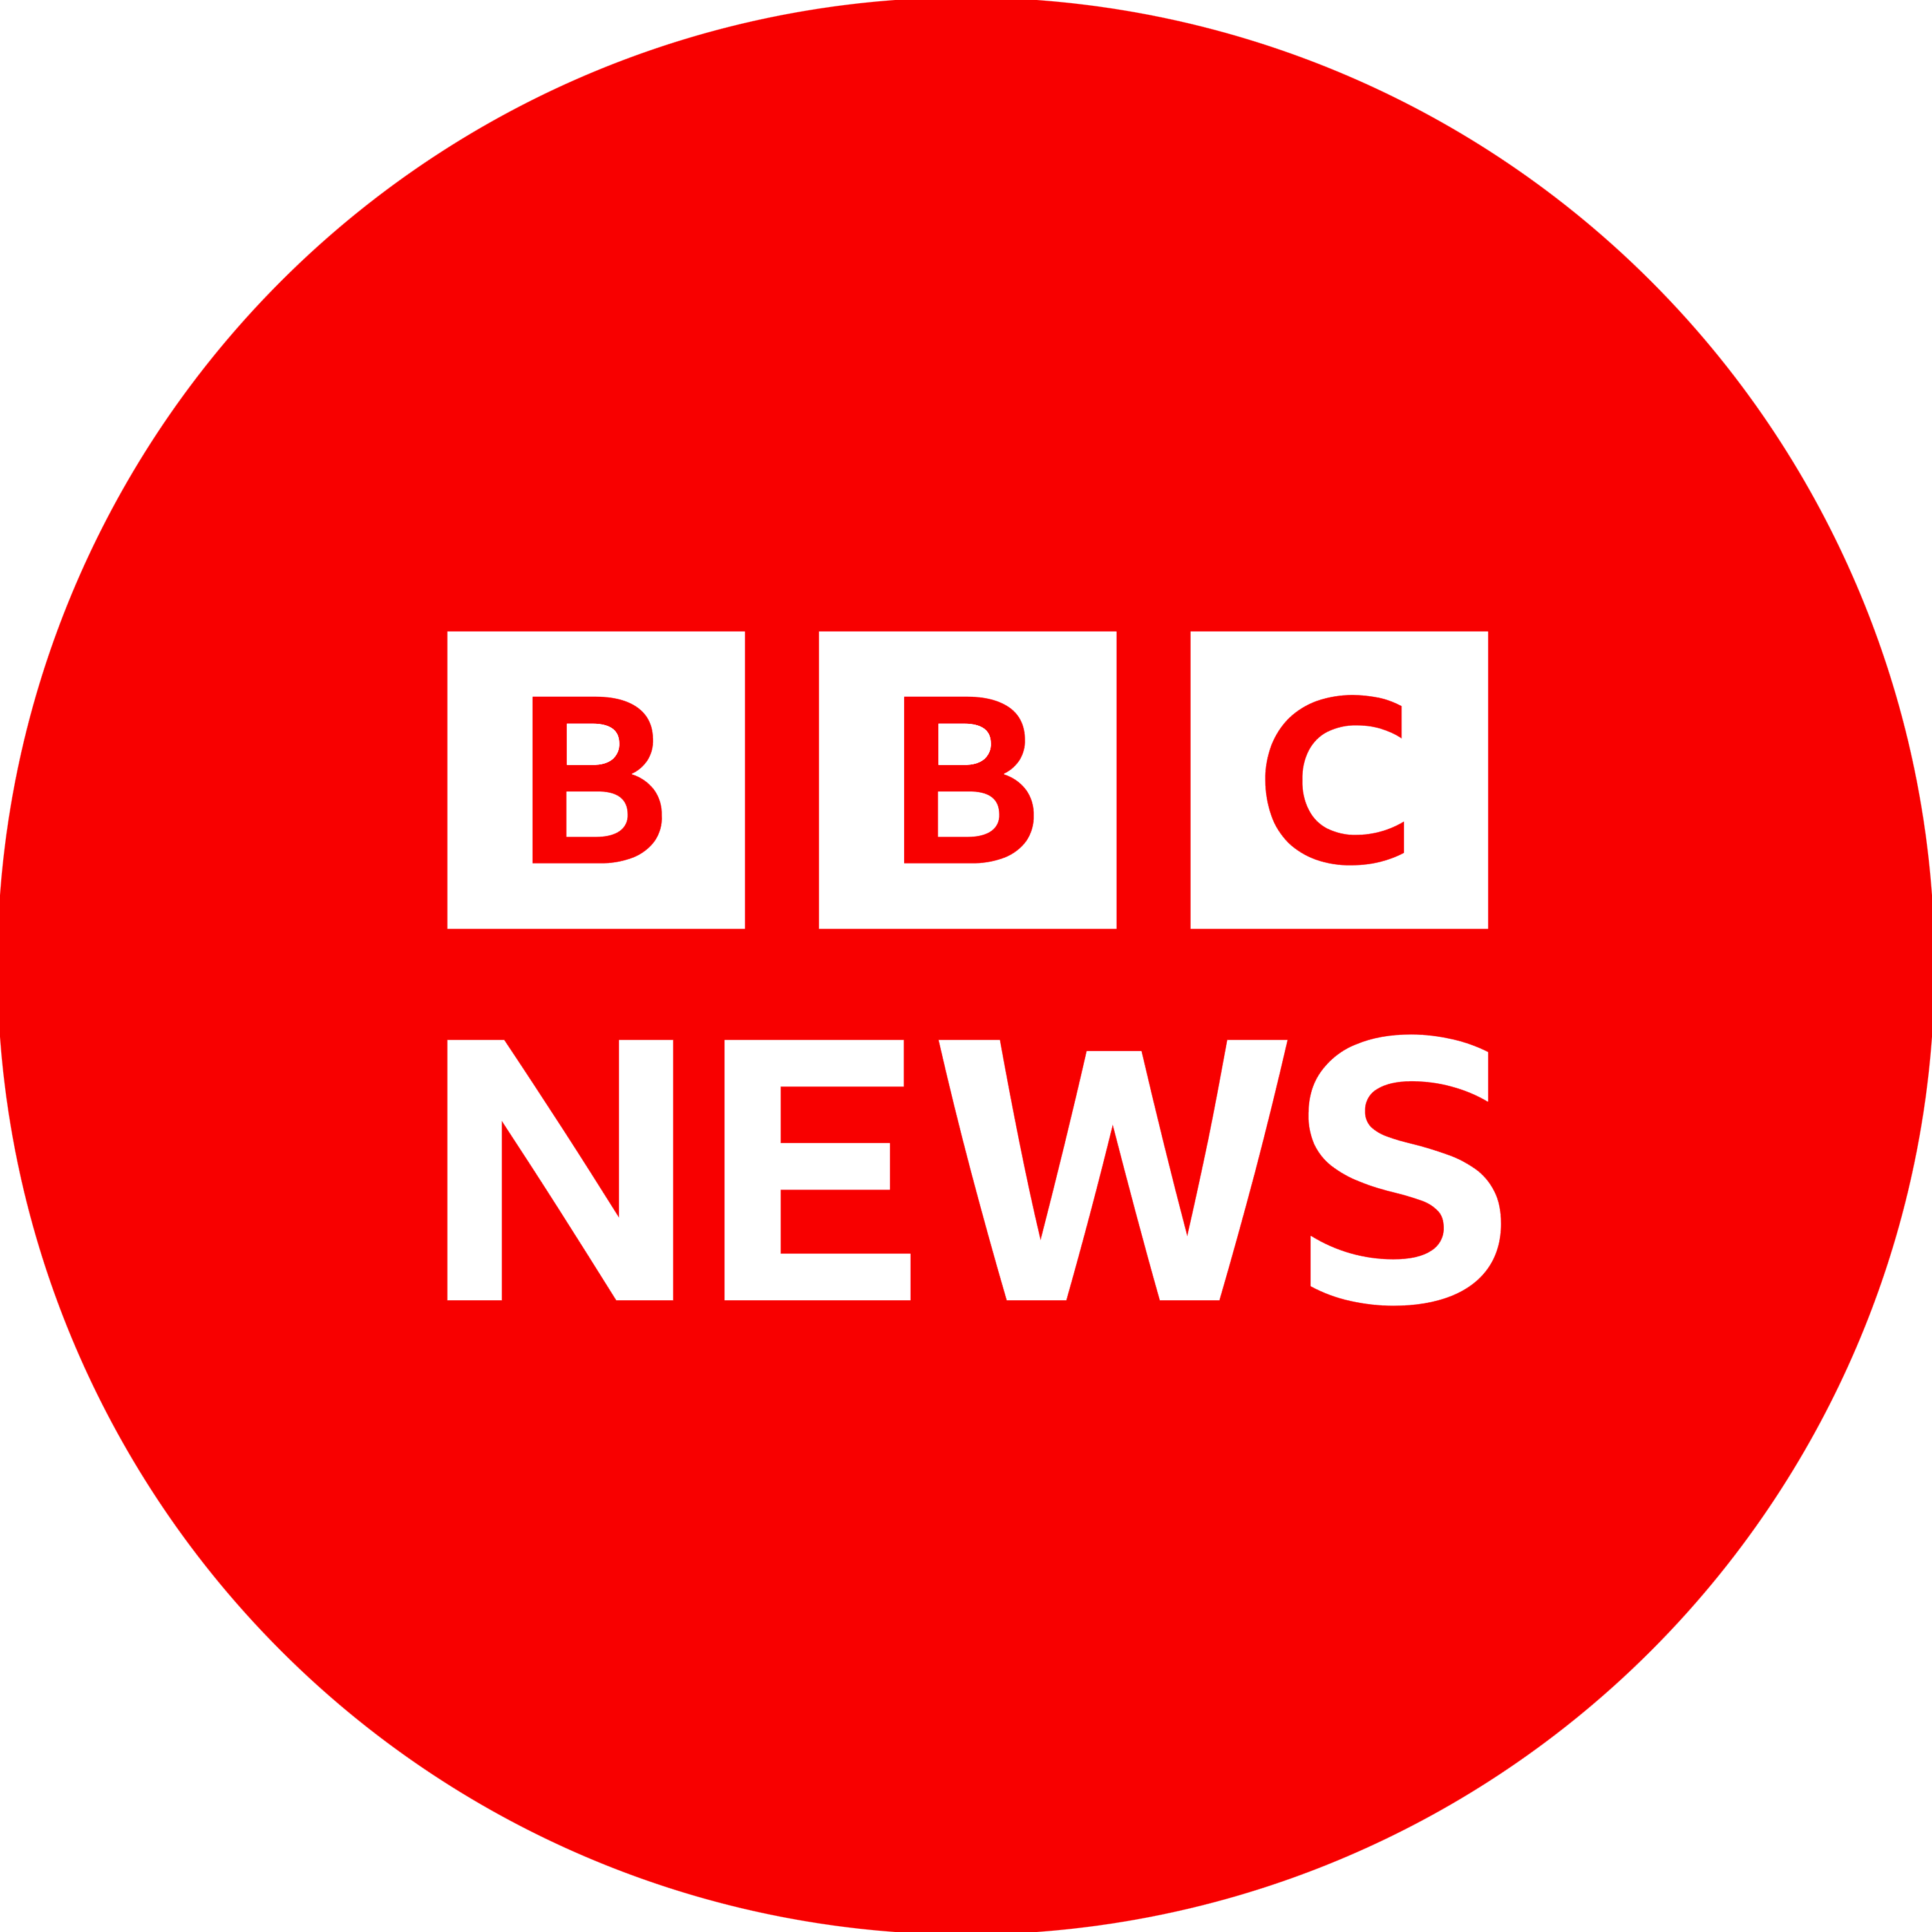 BBC News Logo Transparent Gallery